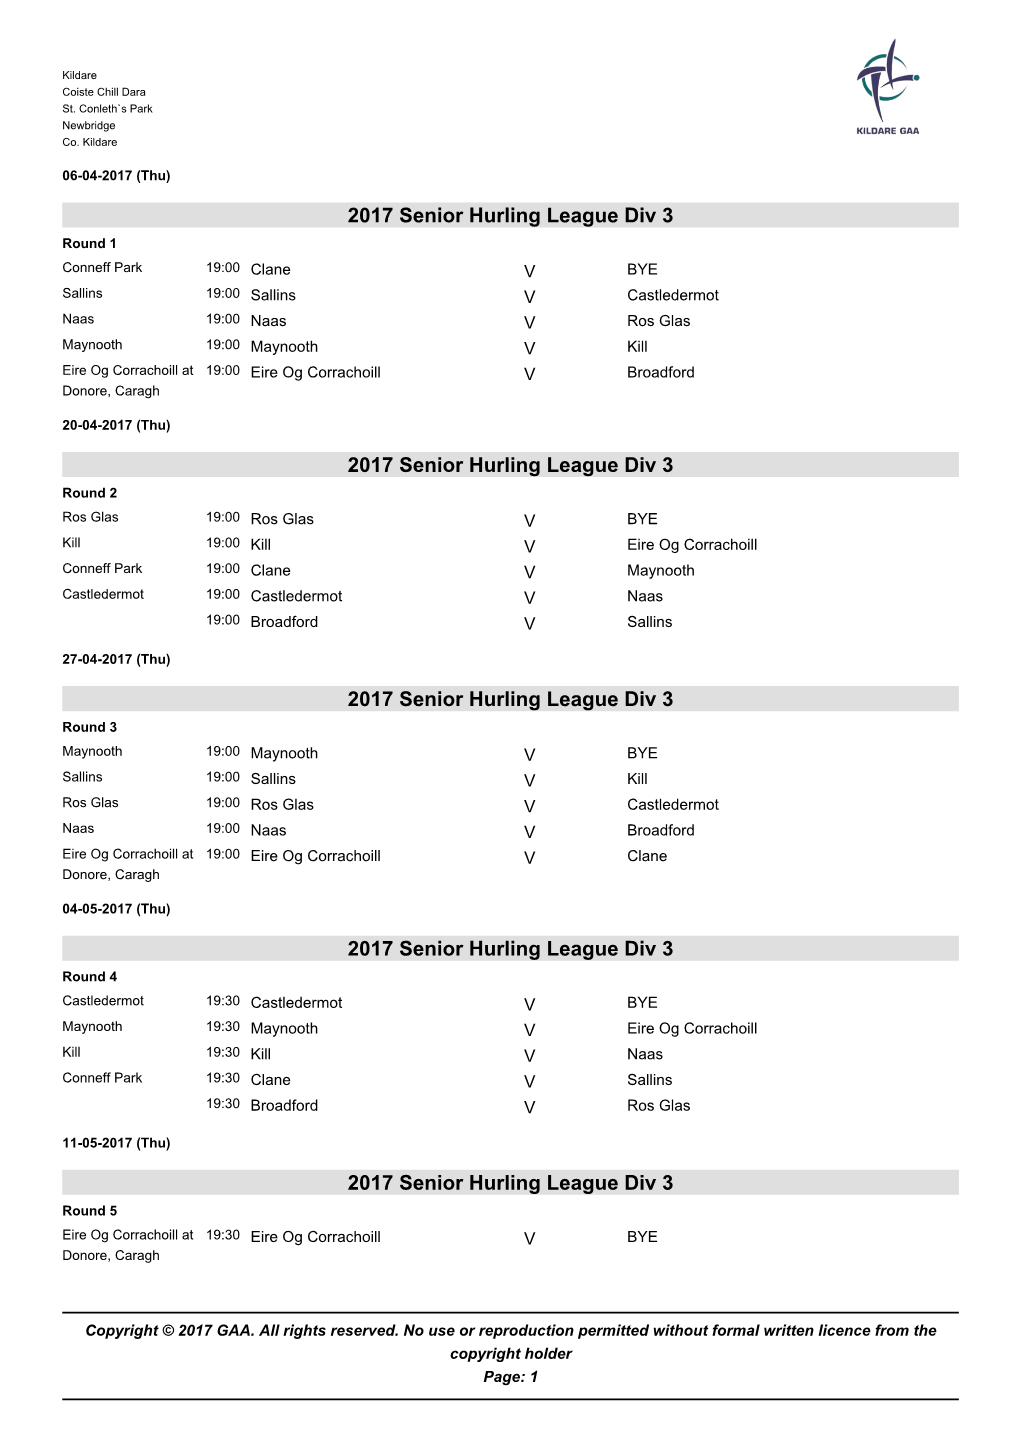 2017 Senior Hurling Div 3